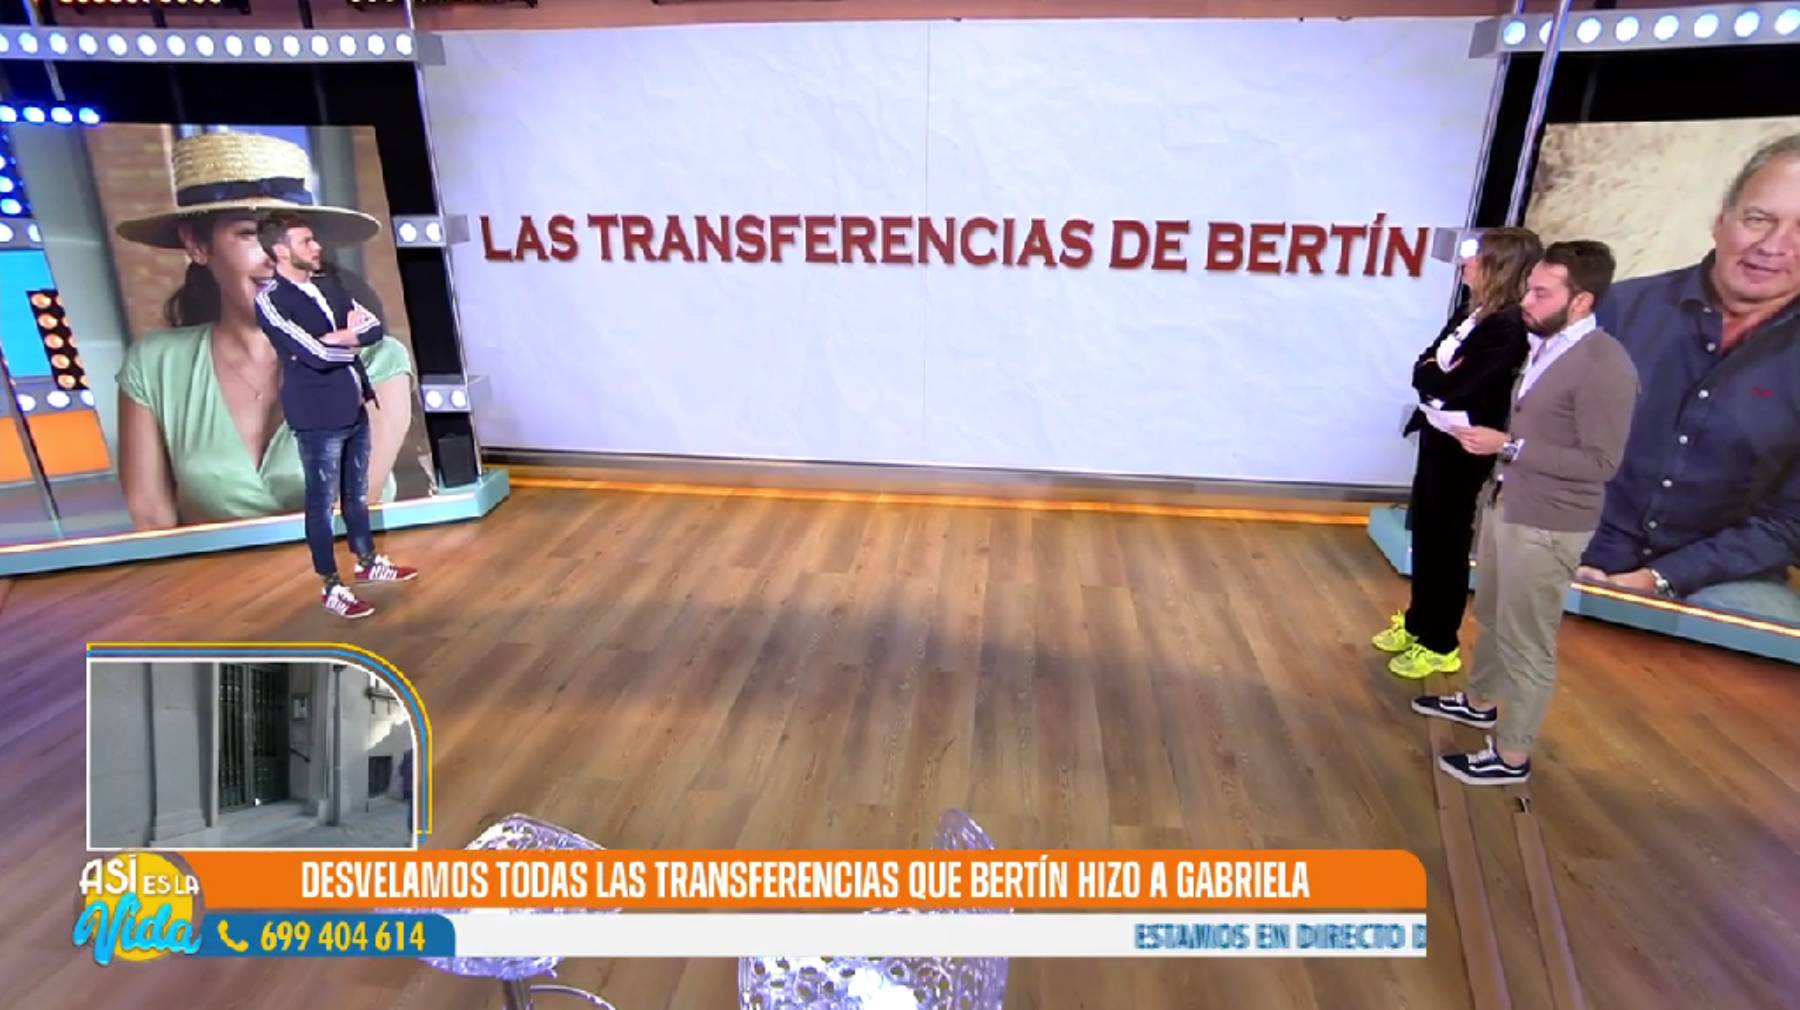 Bertín Osborne transferencias, Gabriela Guillén Bertín, Bertín Osborne